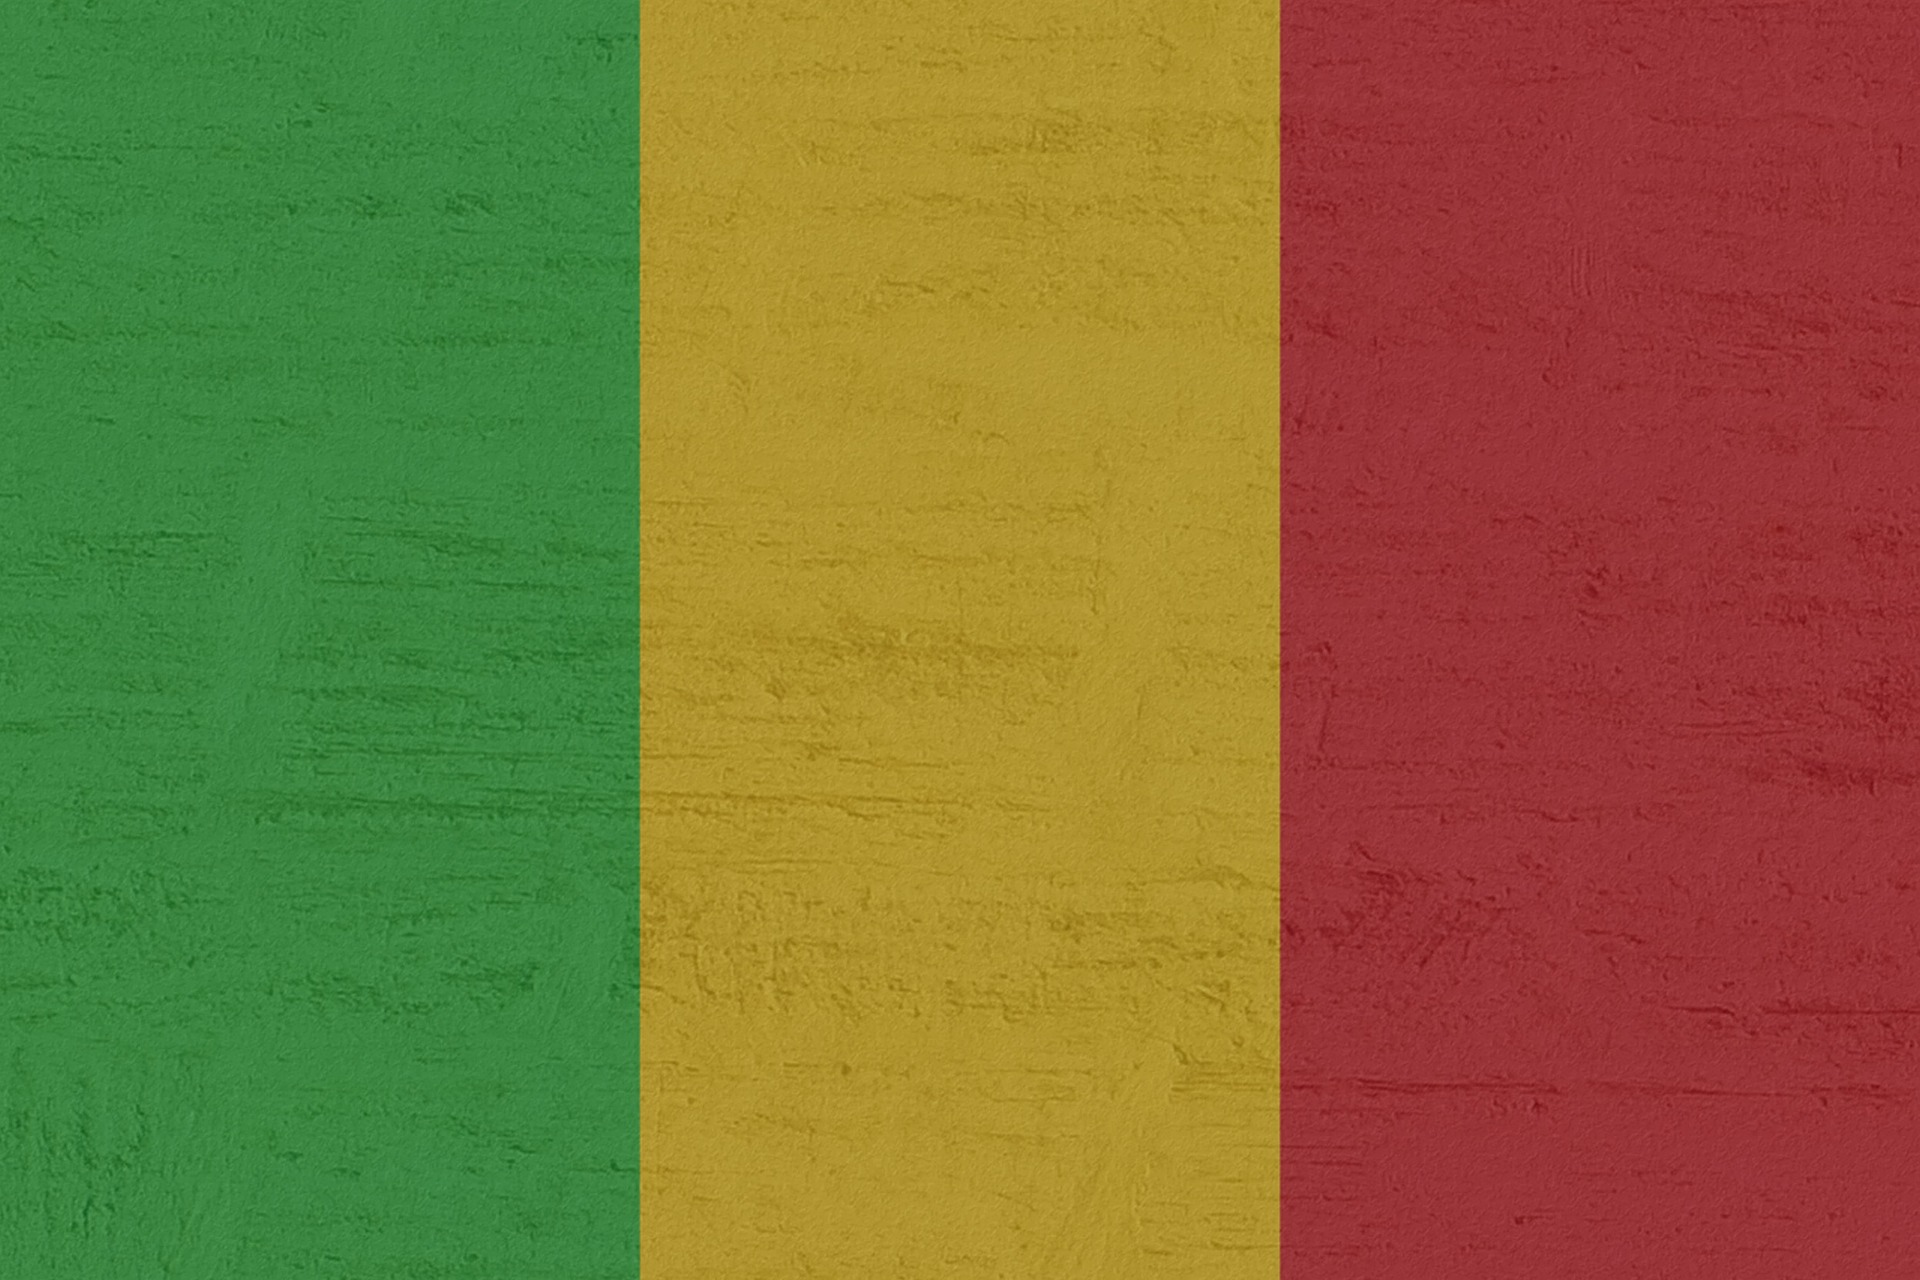 Malí cancela las celebraciones del aniversario de la Independencia